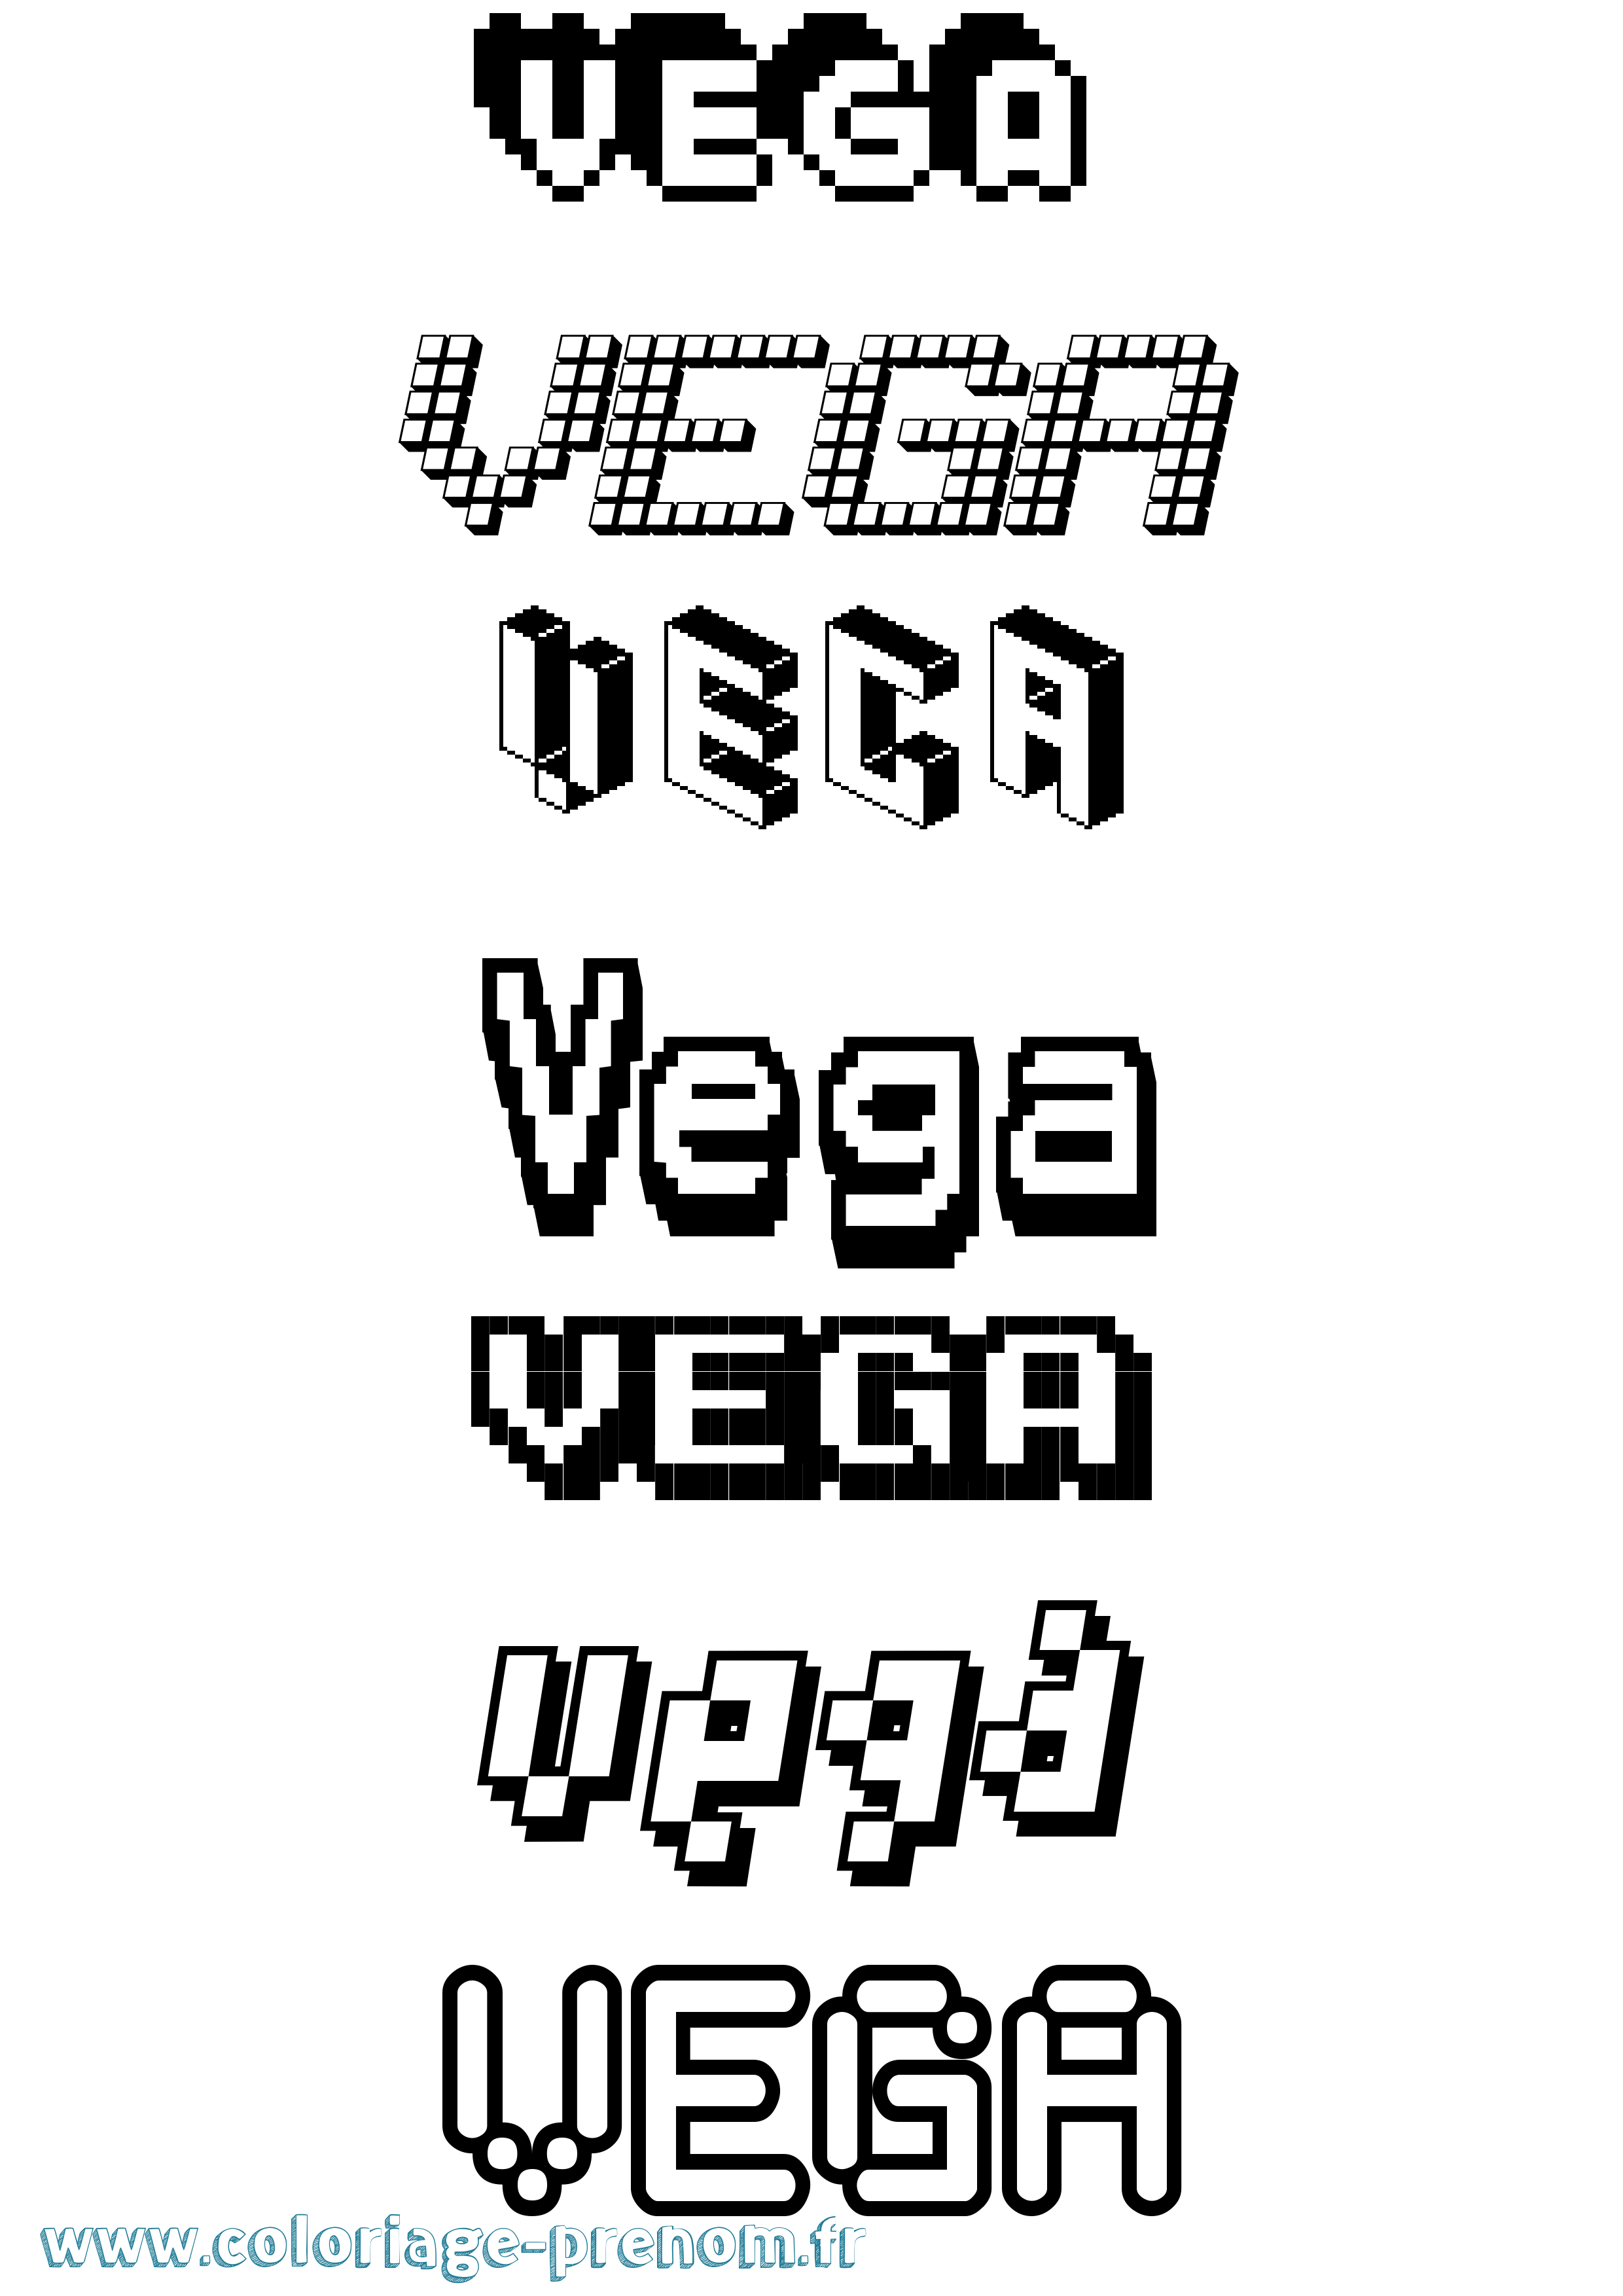 Coloriage prénom Vega Pixel